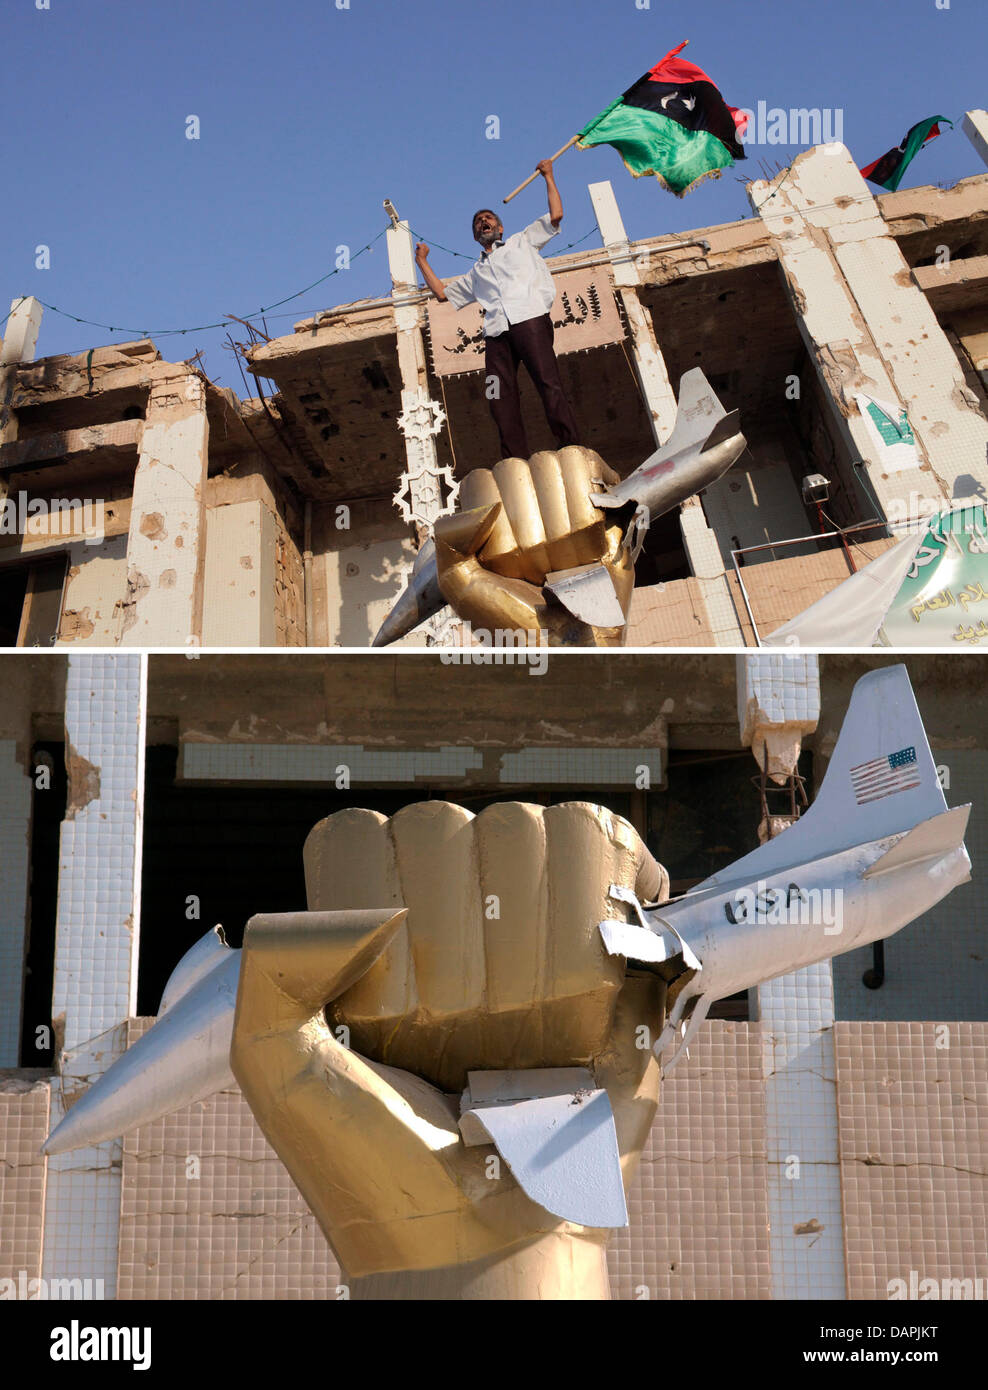 (Dpa) file - un file immagine datata 15 ottobre 2011 di un pugno di dorata di frantumazione ci un jet militare nella facciata di una casa di proprietà dal leader libico Muammar Gheddafi e distrutta da un attacco degli Stati Uniti dopo la LaBelle bombardamenti nel 1986 in piedi nei locali di Gheddafi composto a Tripoli, in Libia. Anche dopo la tempesta rivoluzionaria sul suo quartier generale Muammar Gheddafi rimane combattivo. Il 24 A Foto Stock